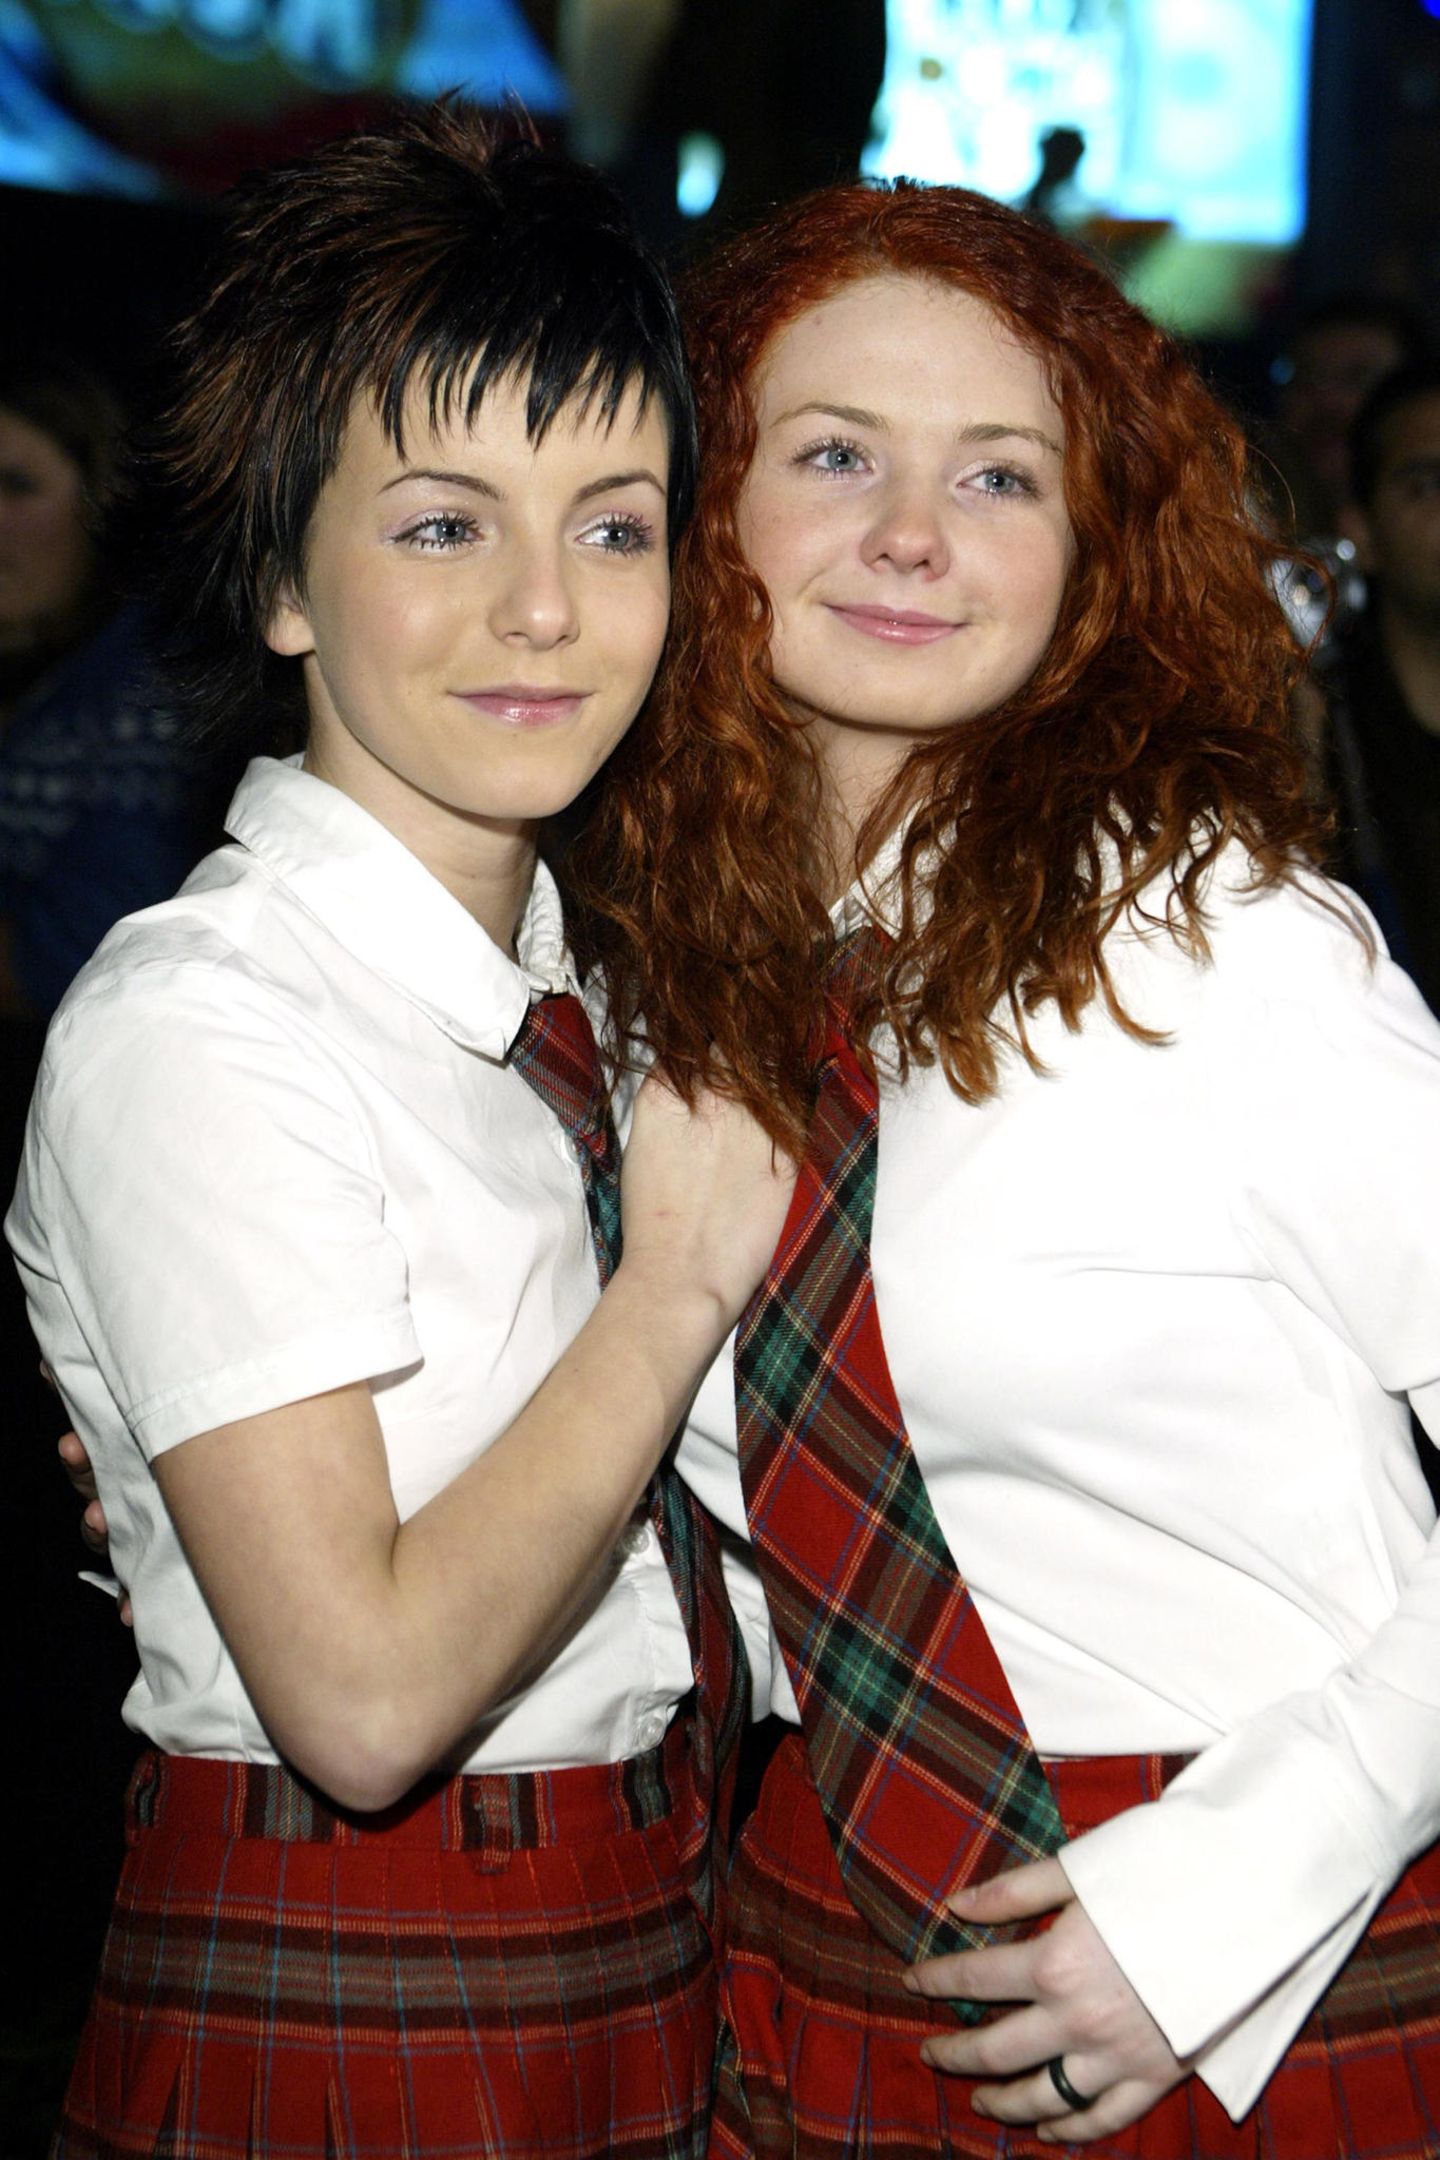 Im Jahr 2002 erregen zwei minderjährige Mädchen internationale Aufmerksamkeit: Als Gesangsduo mit dem Namen „t.A.T.u.“ präsentieren sich Julija Wolkowa und Jelena Katina auf der Bühne als laszive Lolitas. 2011 trennt sich das russische Pop-Duo. Doch was machen die beiden Sängerinnen eigentlich heute?